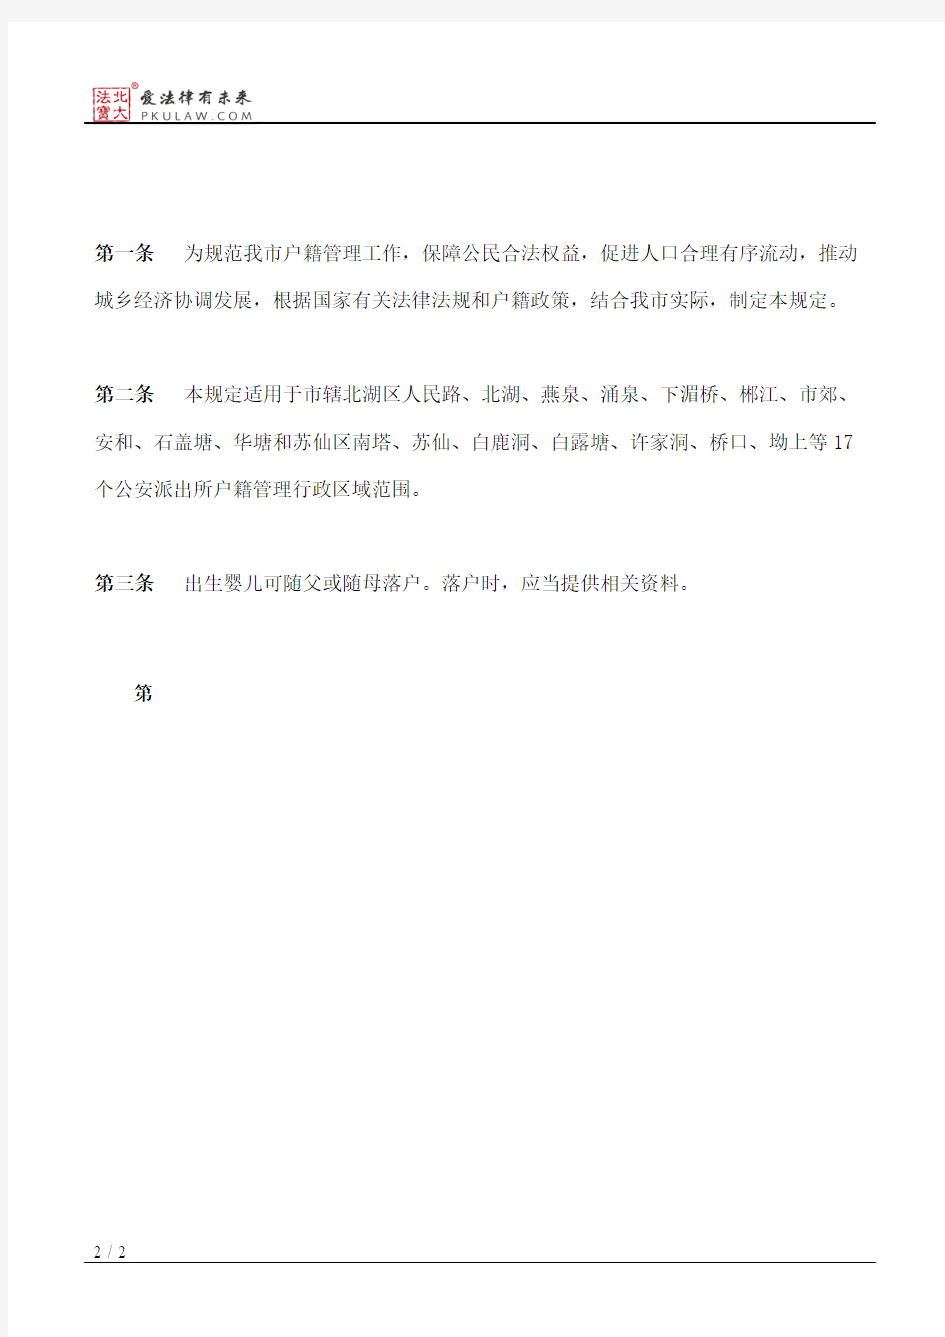 郴州市人民政府办公室关于印发《郴州市市城区户籍登记工作暂行规